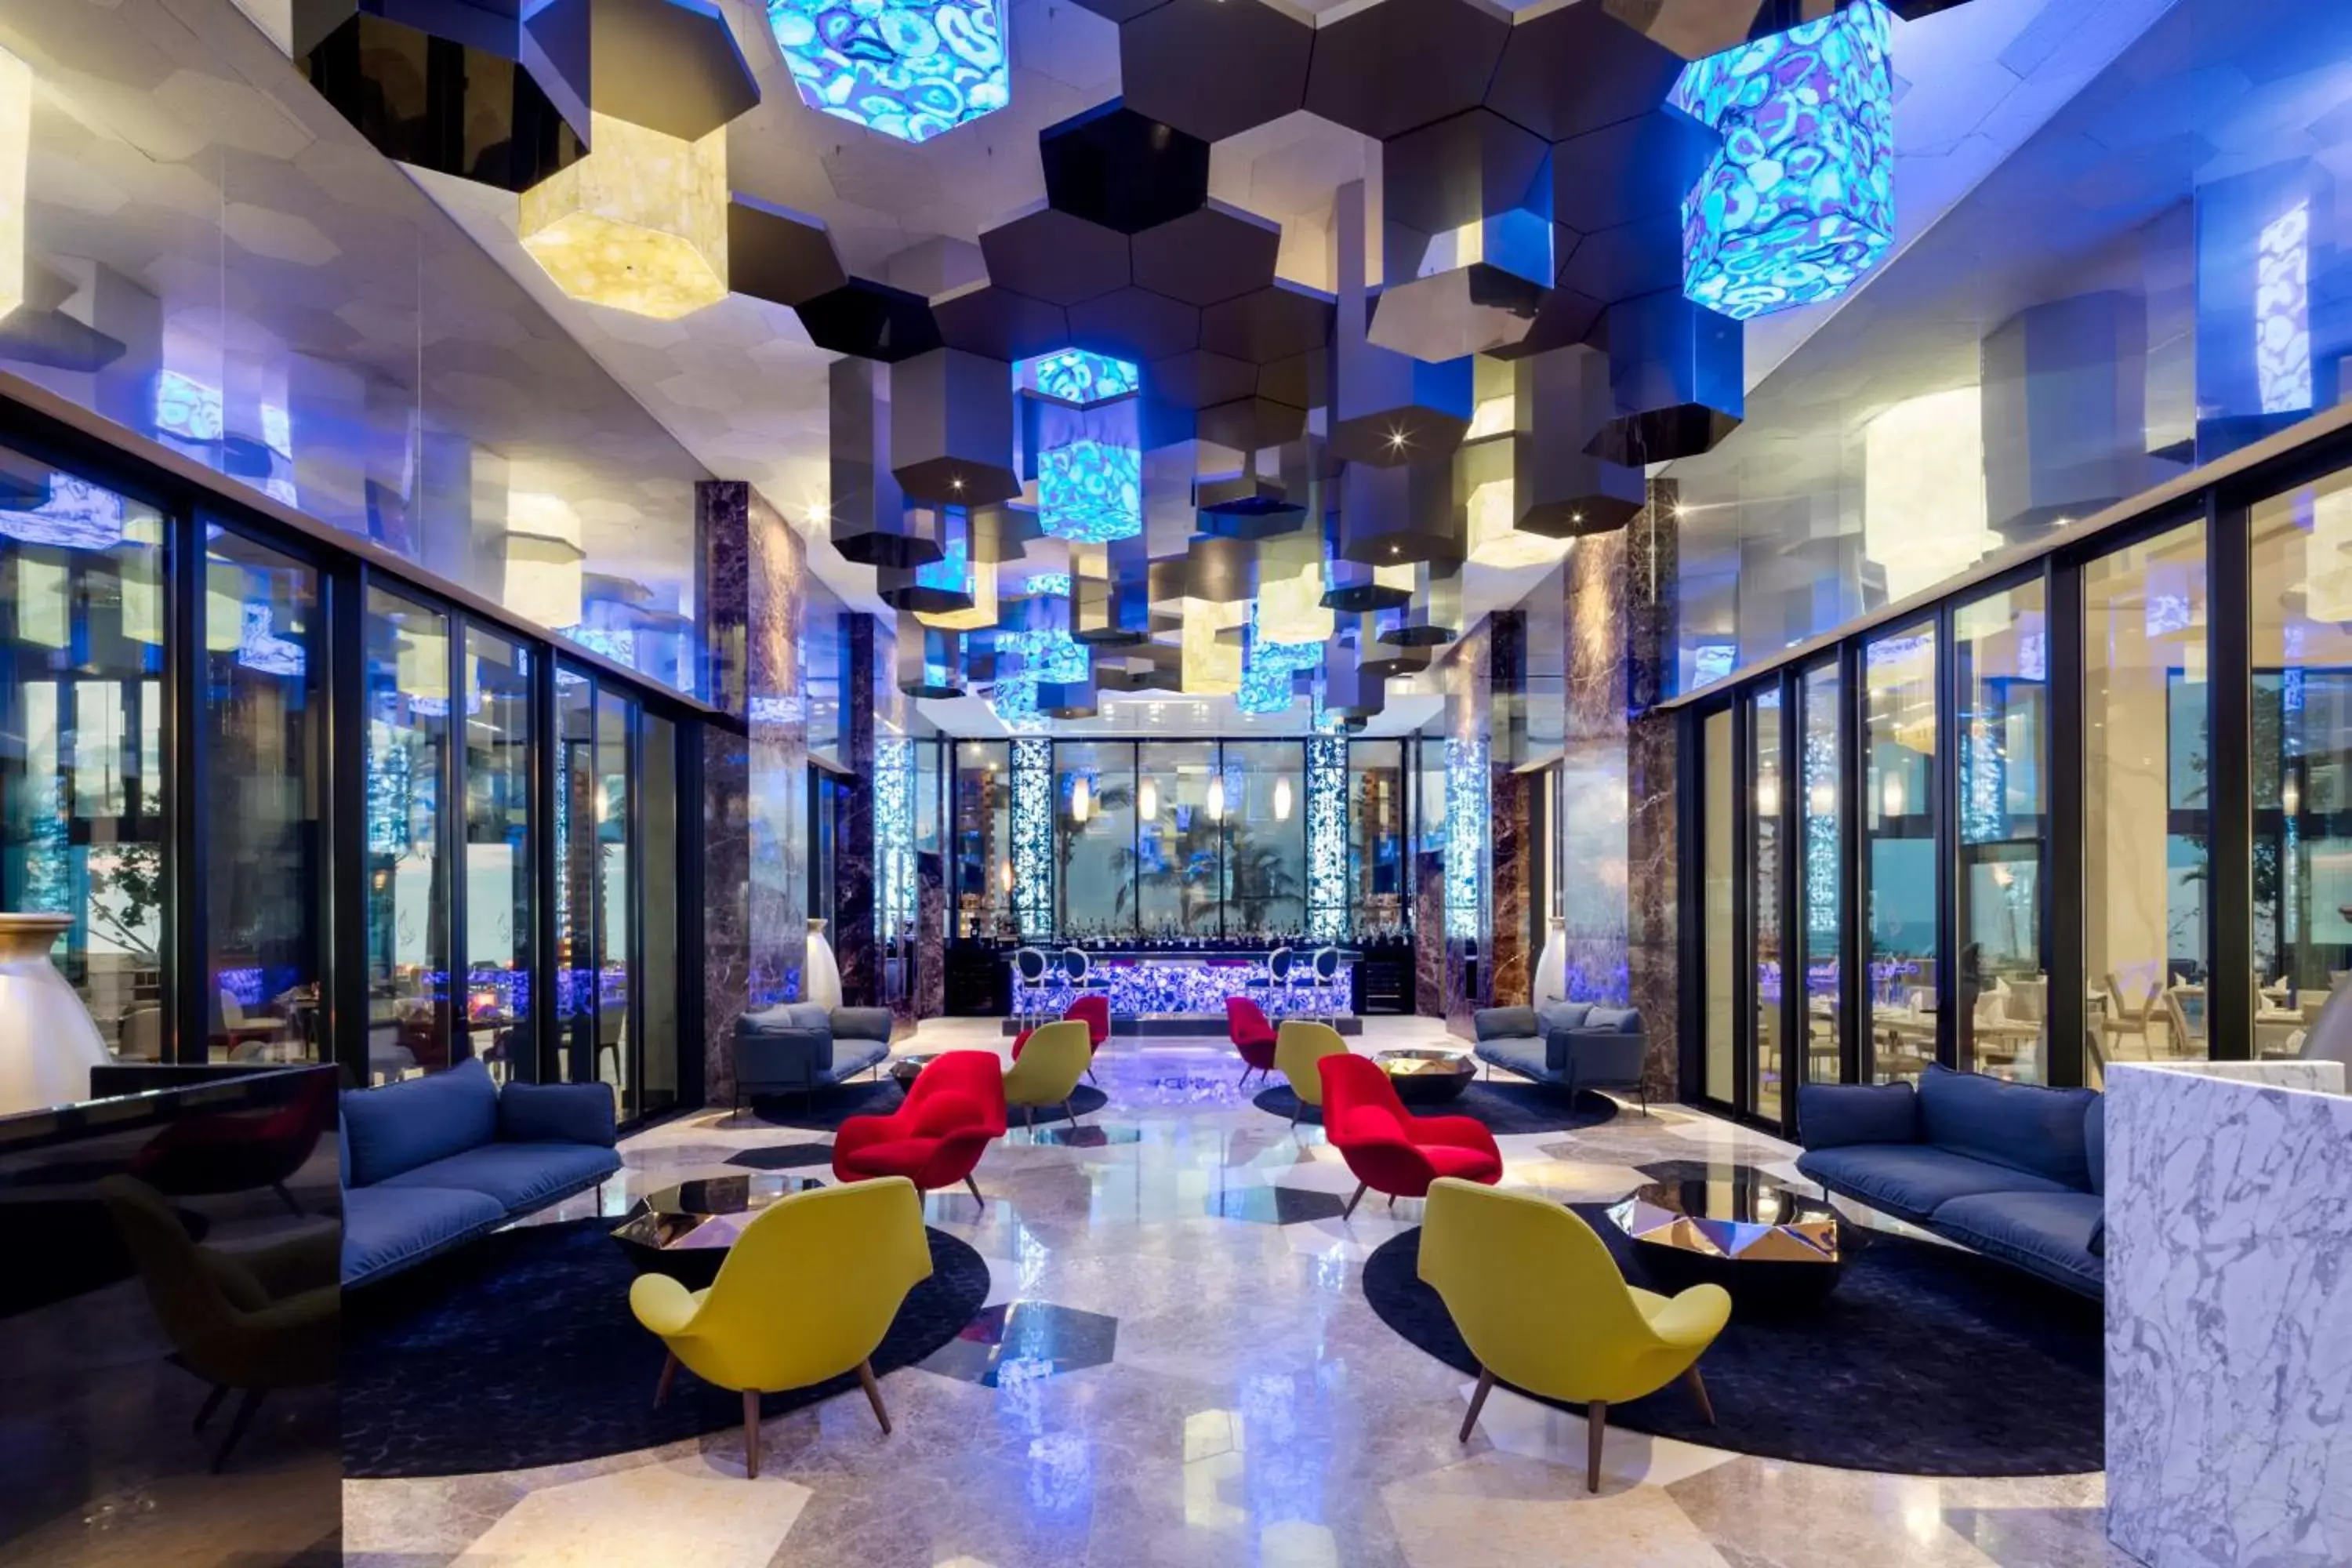 Lounge or bar, Banquet Facilities in Garza Blanca Resort & Spa Los Cabos